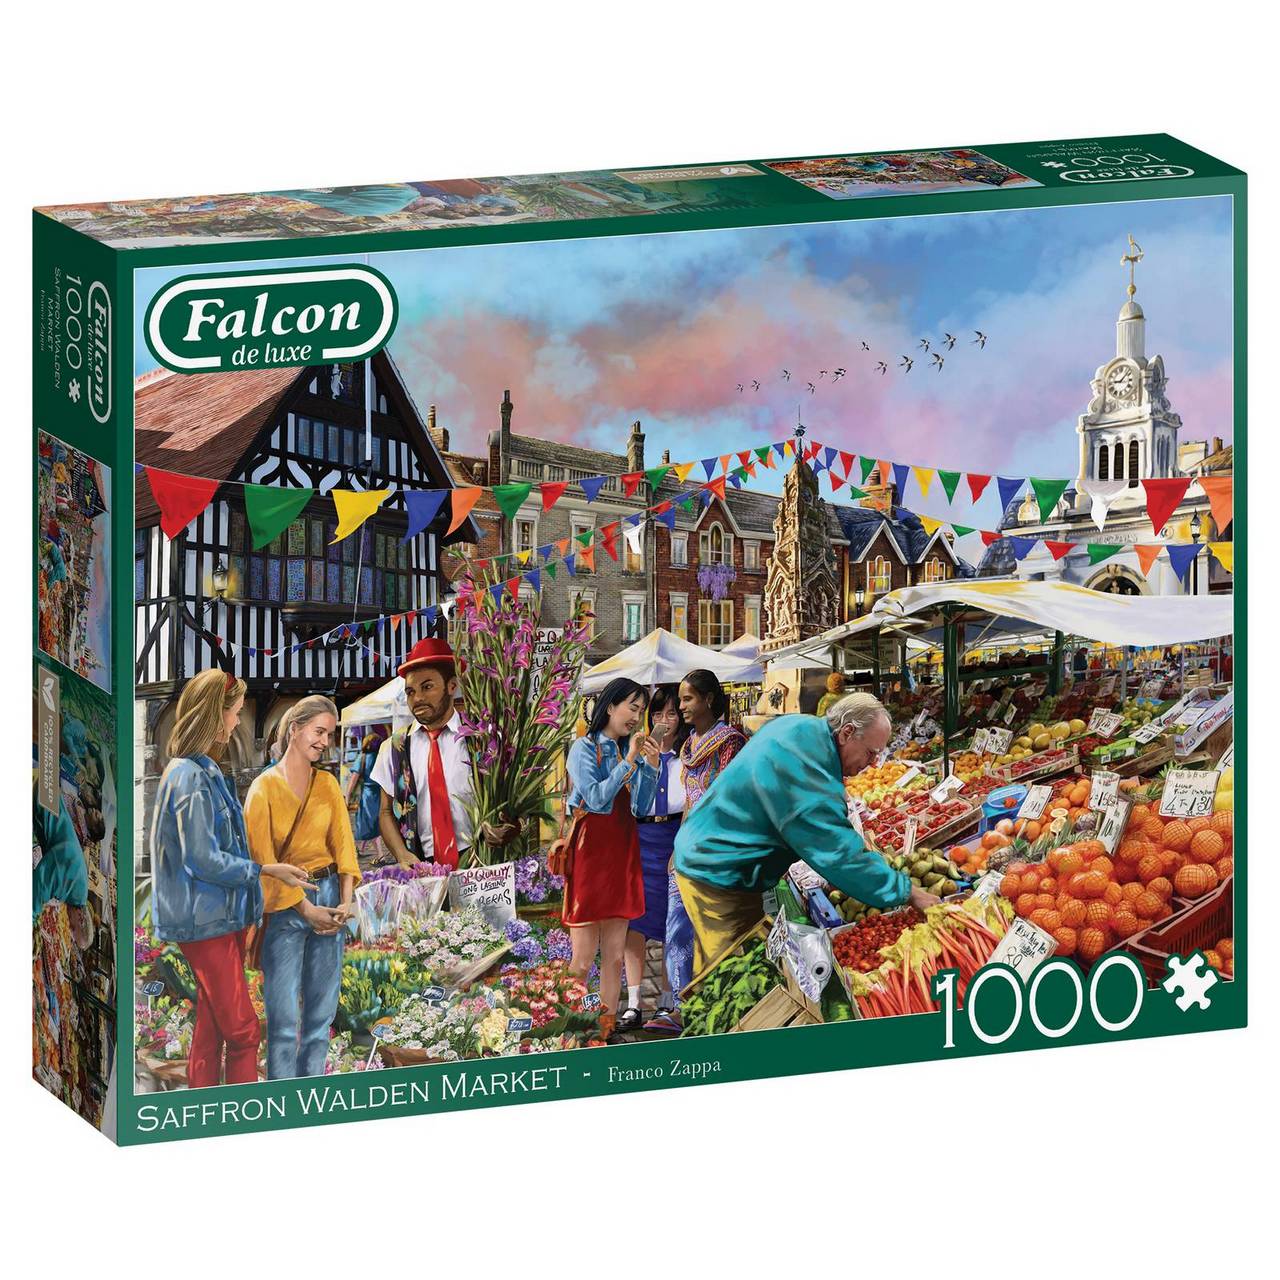 Falcon de Luxe - Saffron Walden Market  - 1000 Piece Jigsaw Puzzle